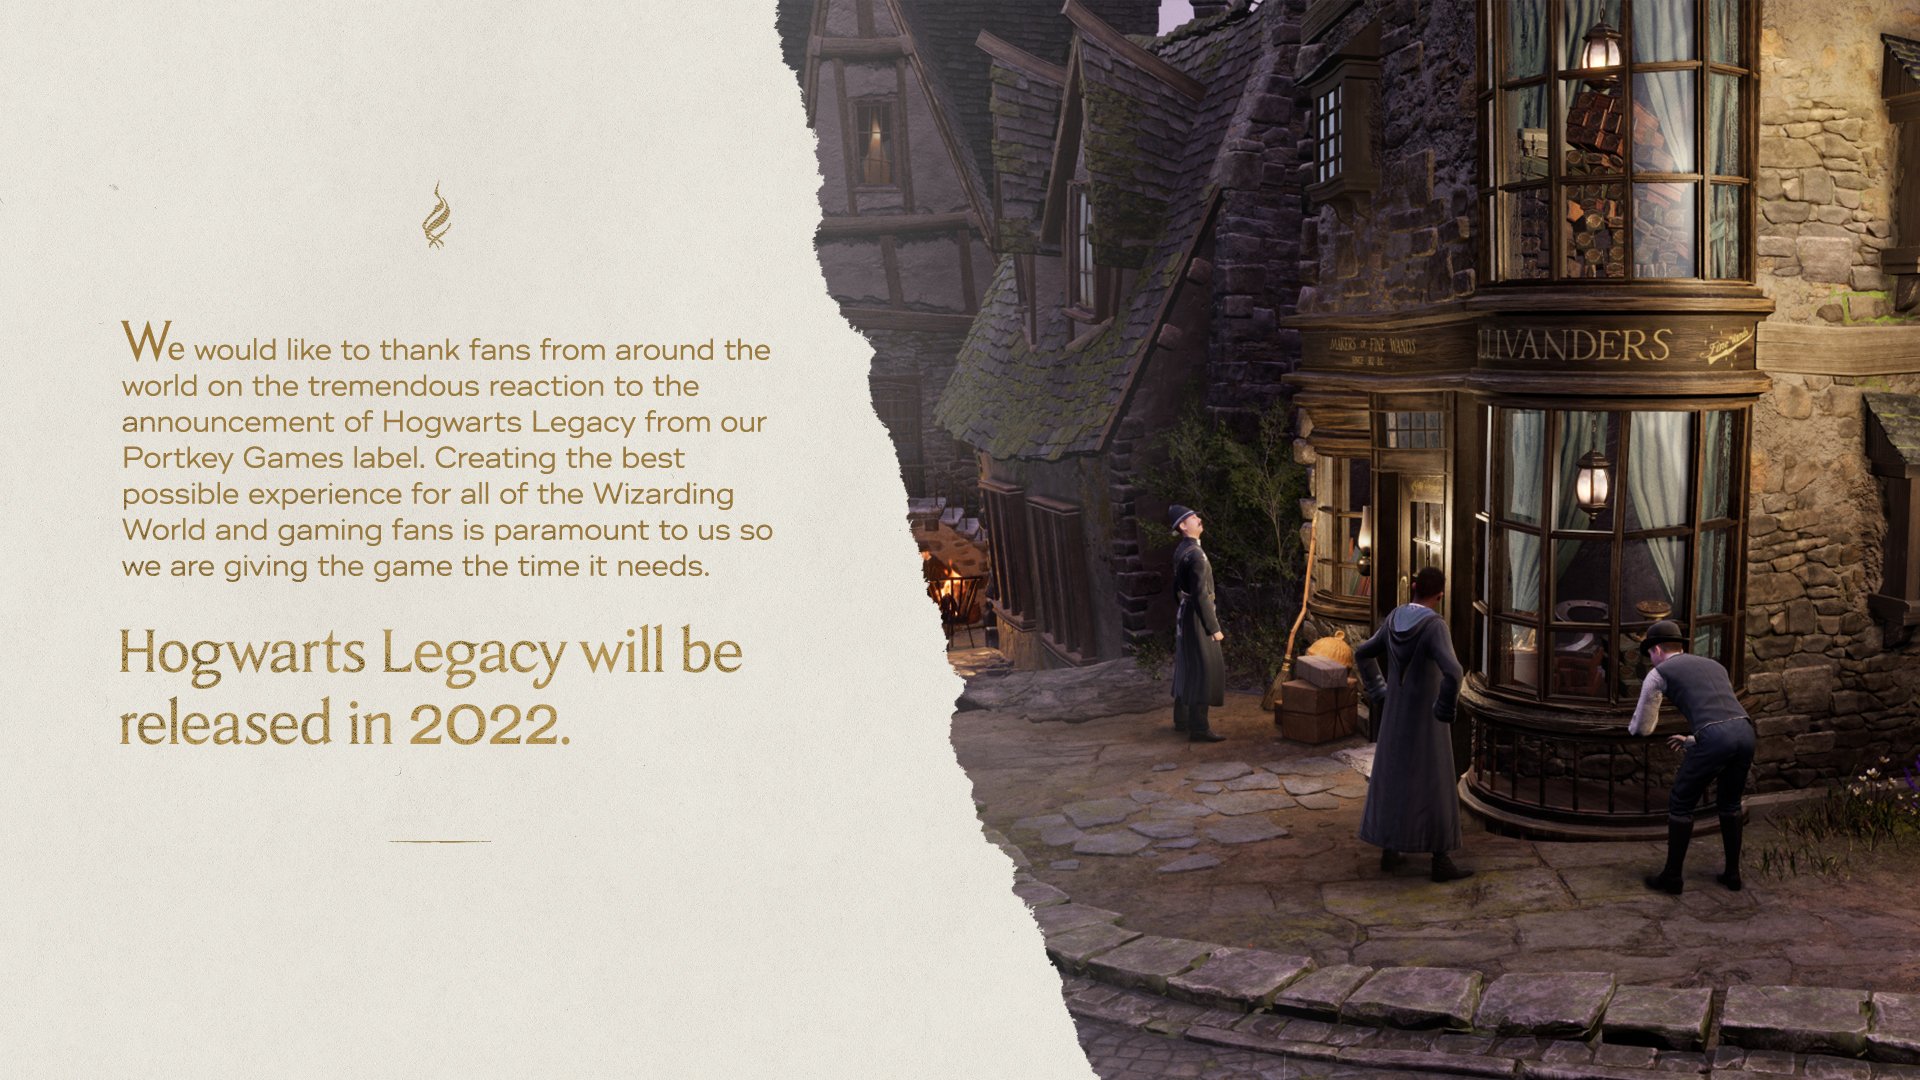 Hogwarts Legacy é adiado para 2023, mas ganha data de lançamento